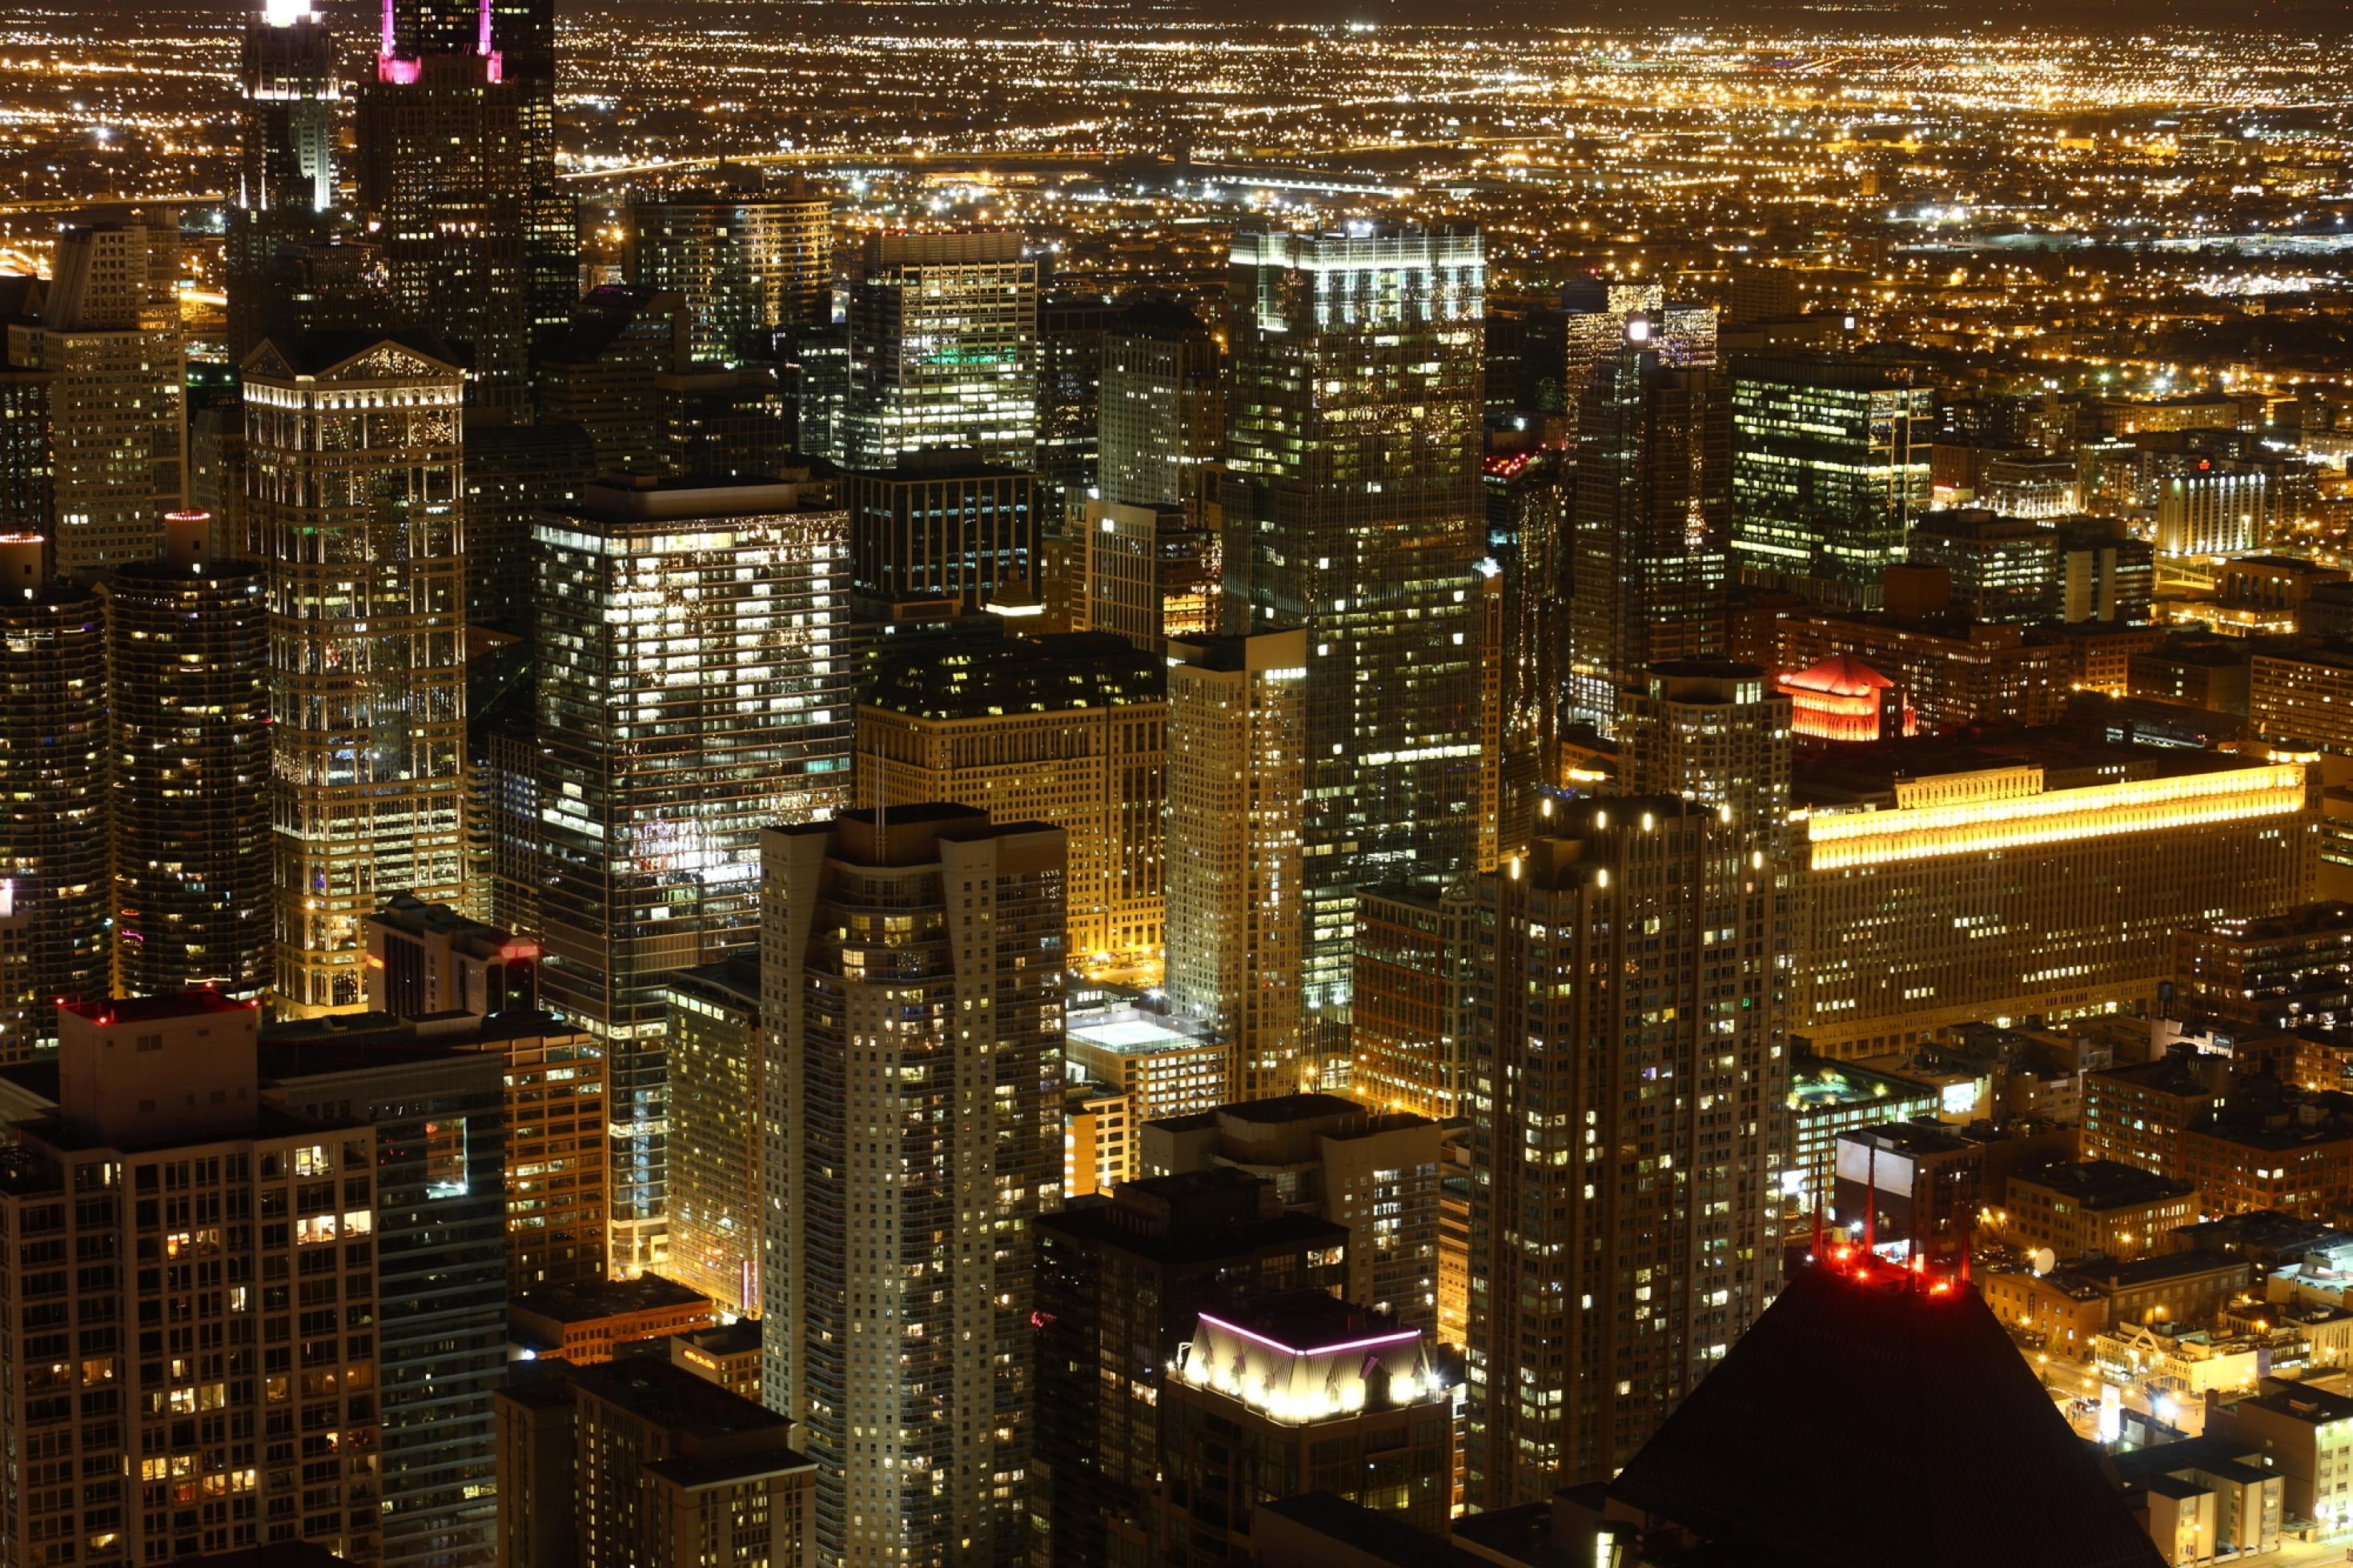 Das Bild zeigt die Innenstadt von Chicago mit zahlreichen Wolkenkratzern und greller Beleuchtung bei Nacht.